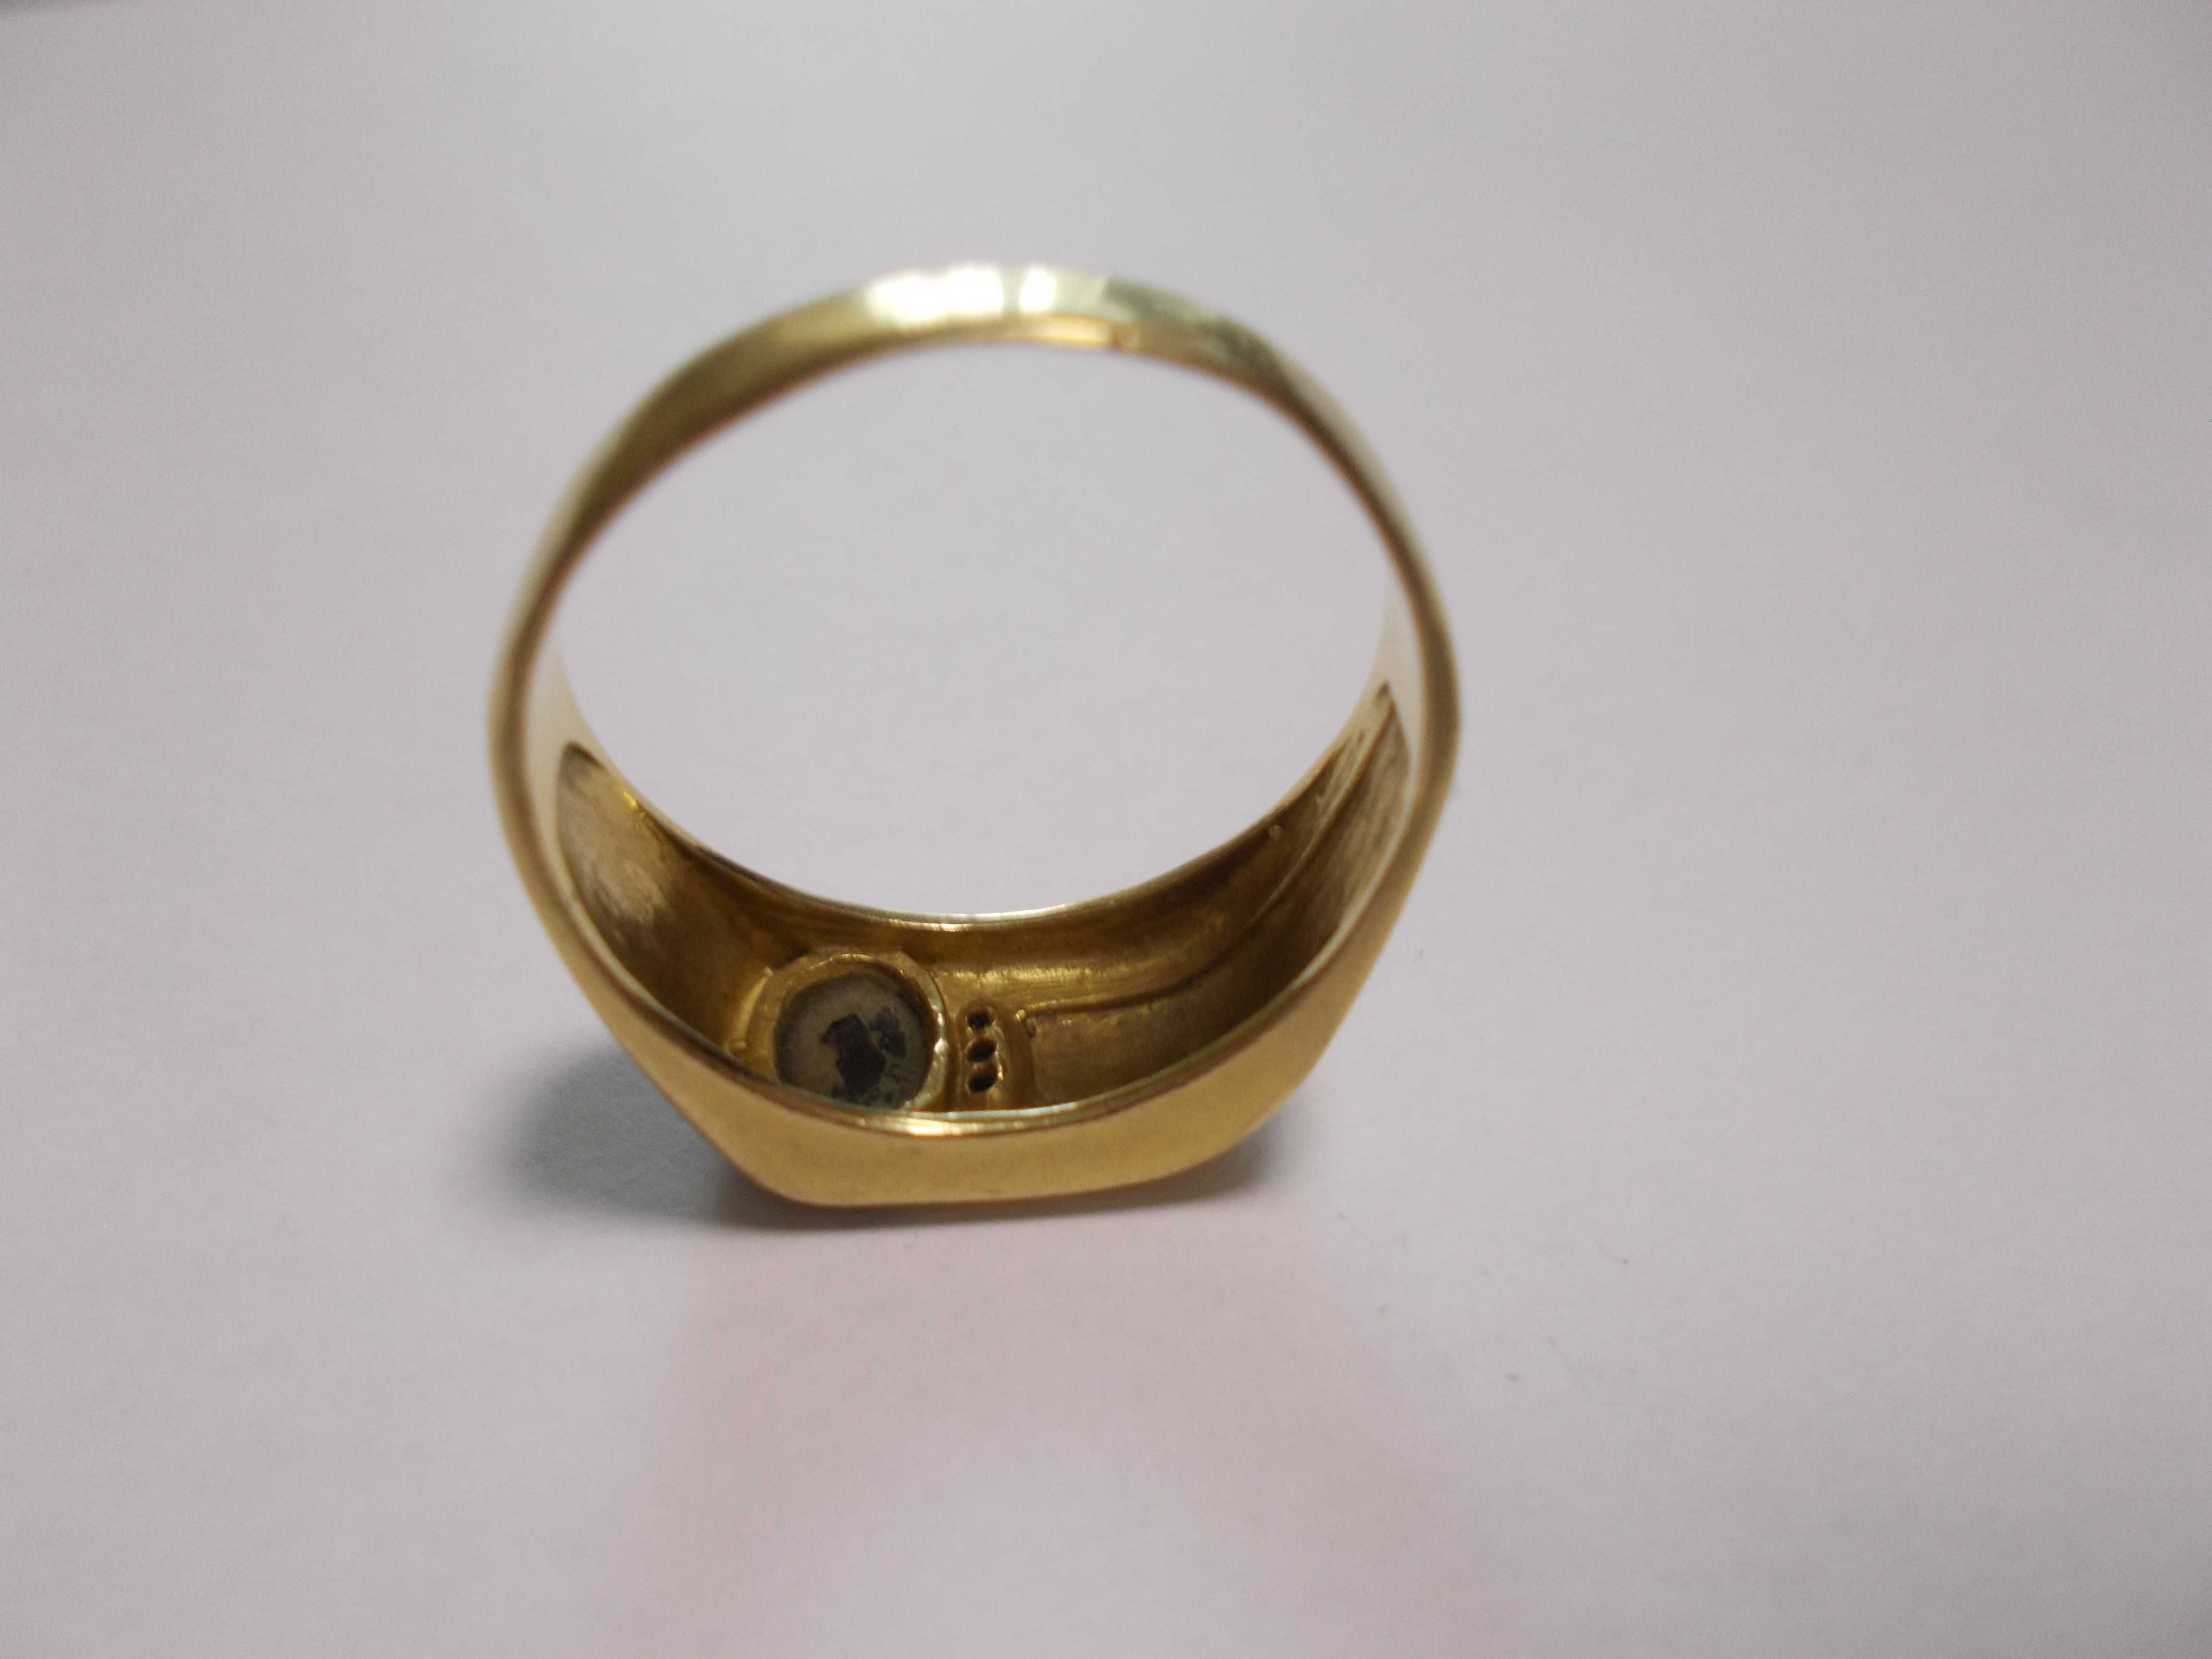 Златен мъжки пръстен с камък